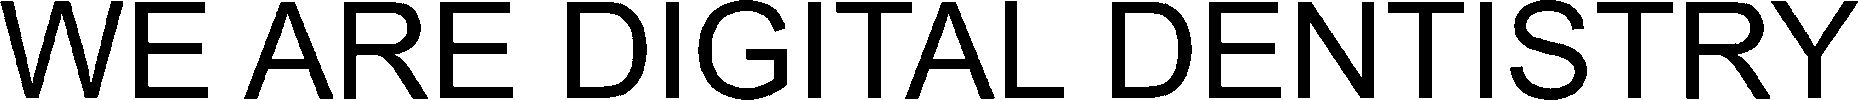 Trademark Logo WE ARE DIGITAL DENTISTRY